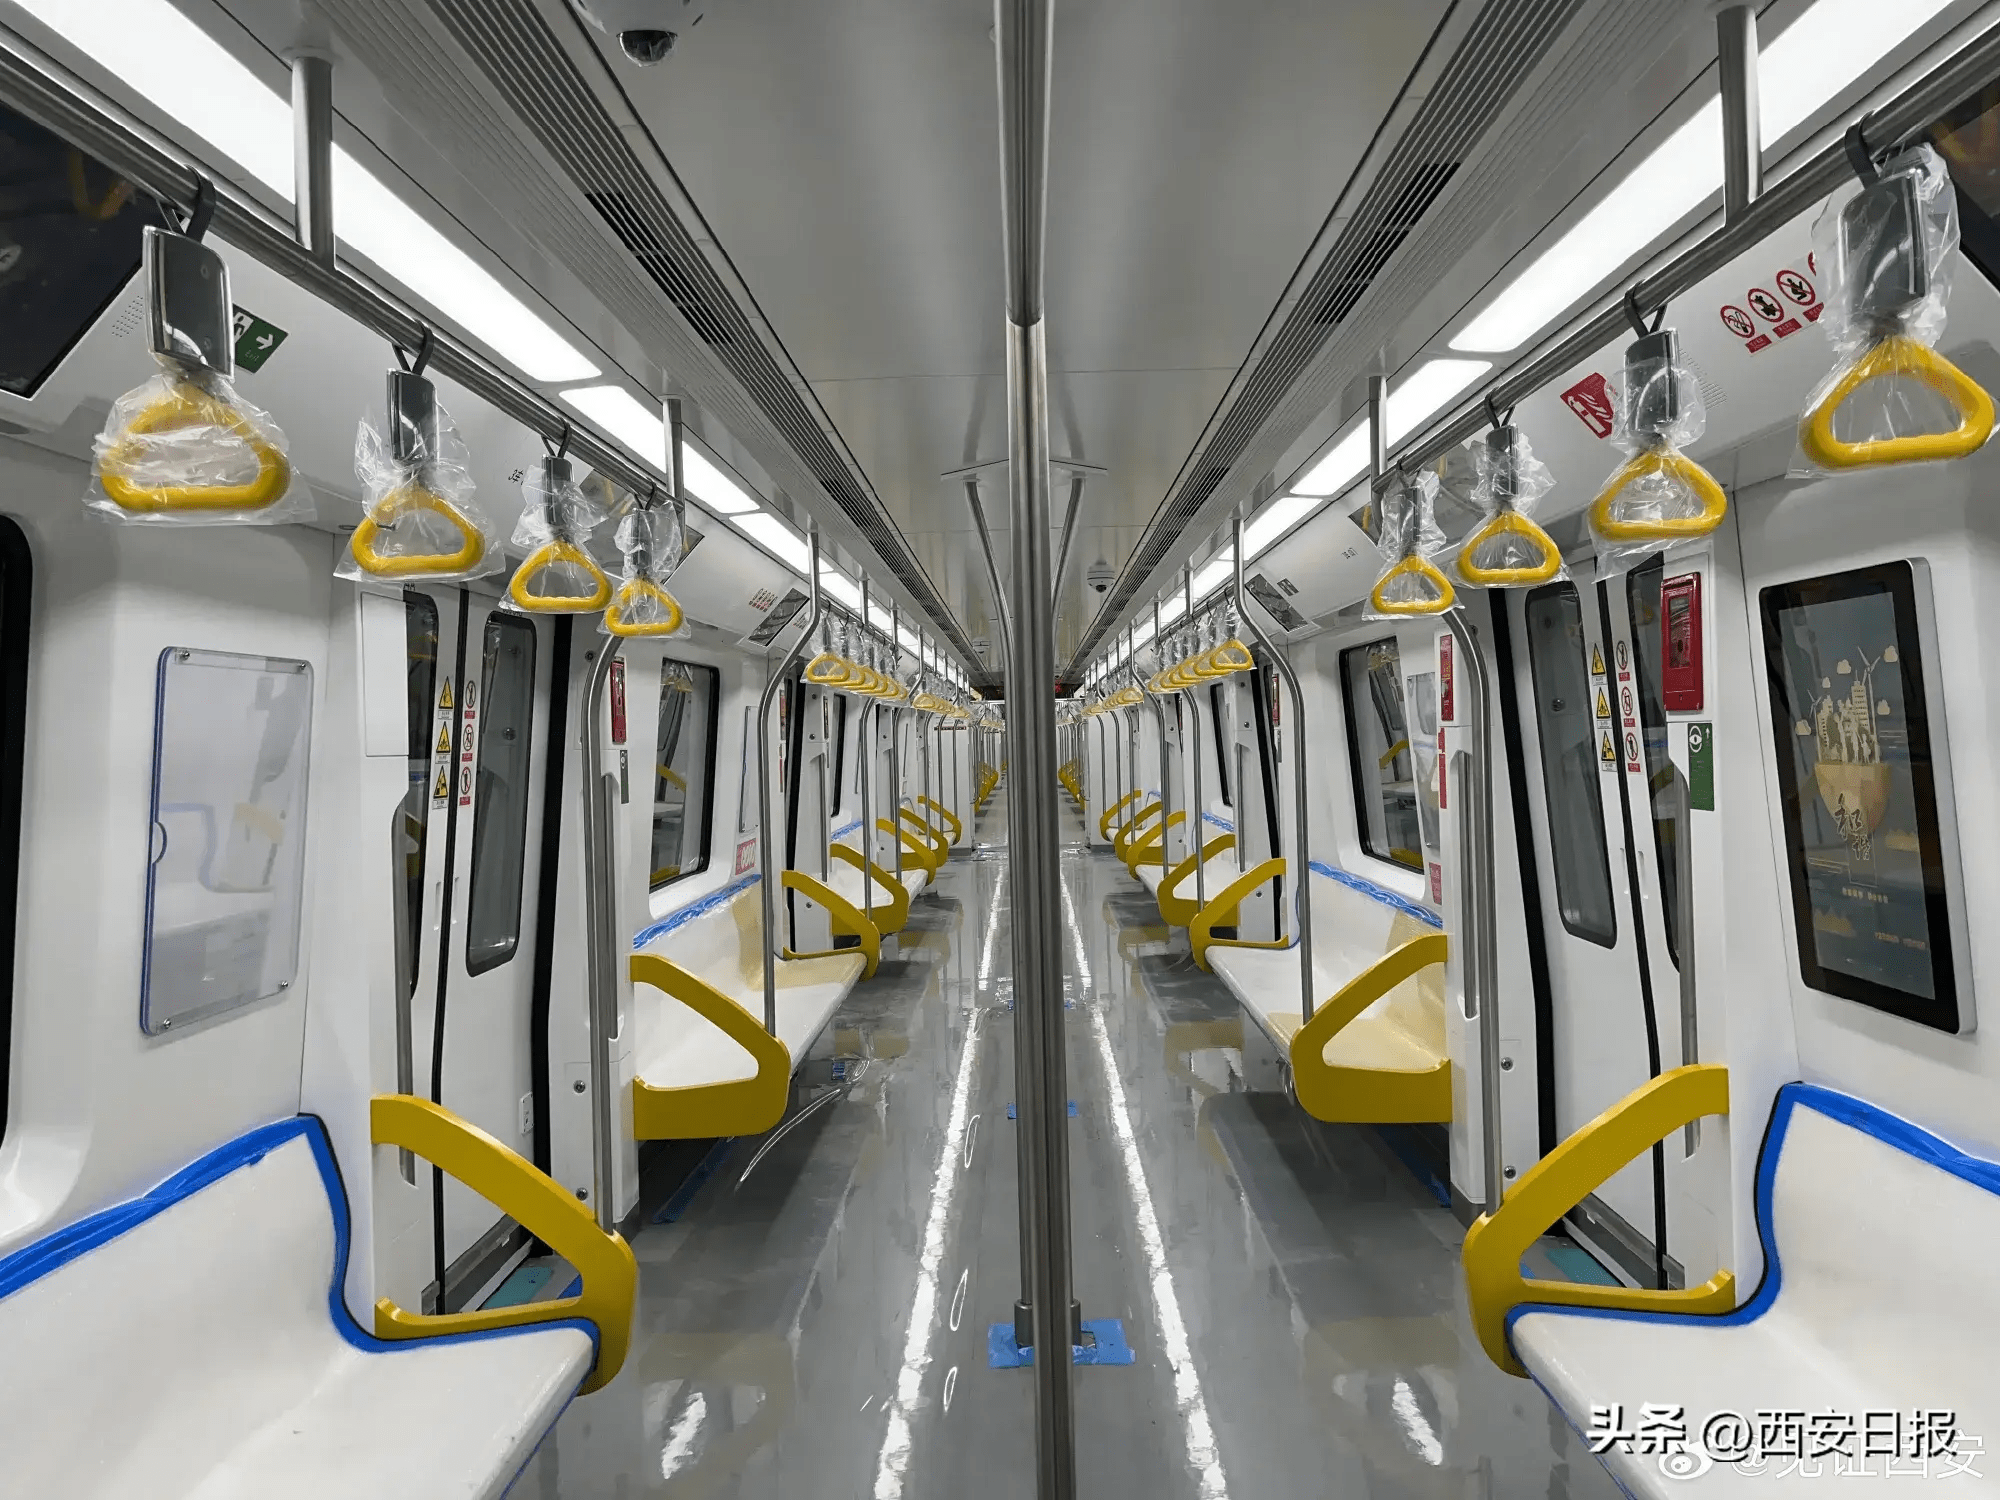 西安地铁8号线列车全方位亮相,首次设置车内无线充电装置